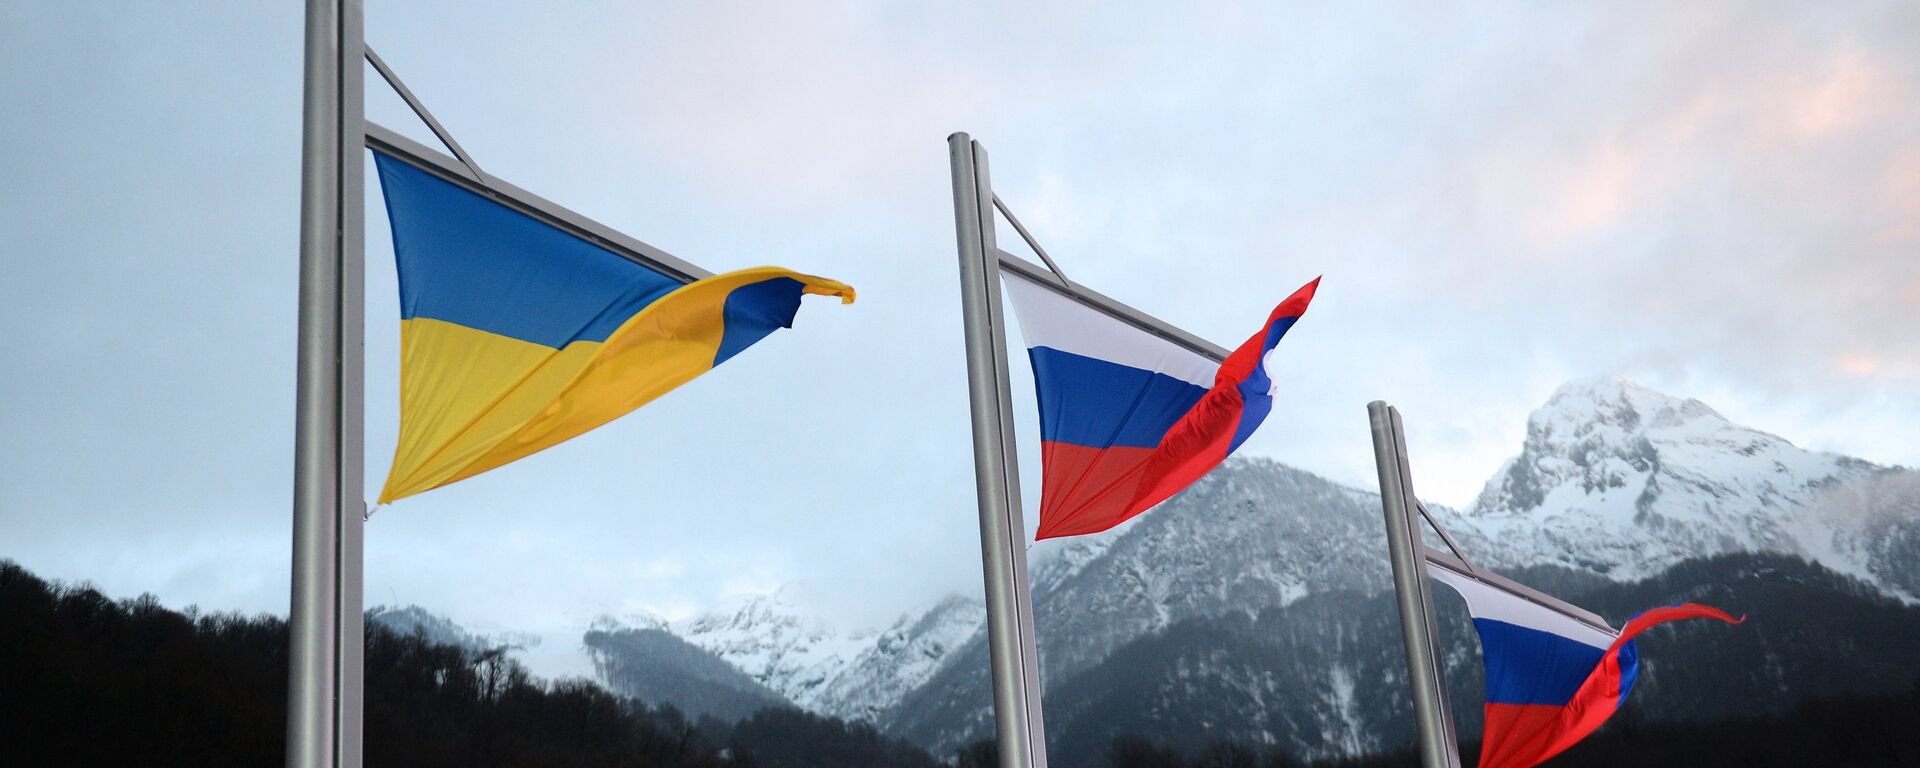 Banderas de Rusia y Ucrania - Sputnik Mundo, 1920, 26.11.2021